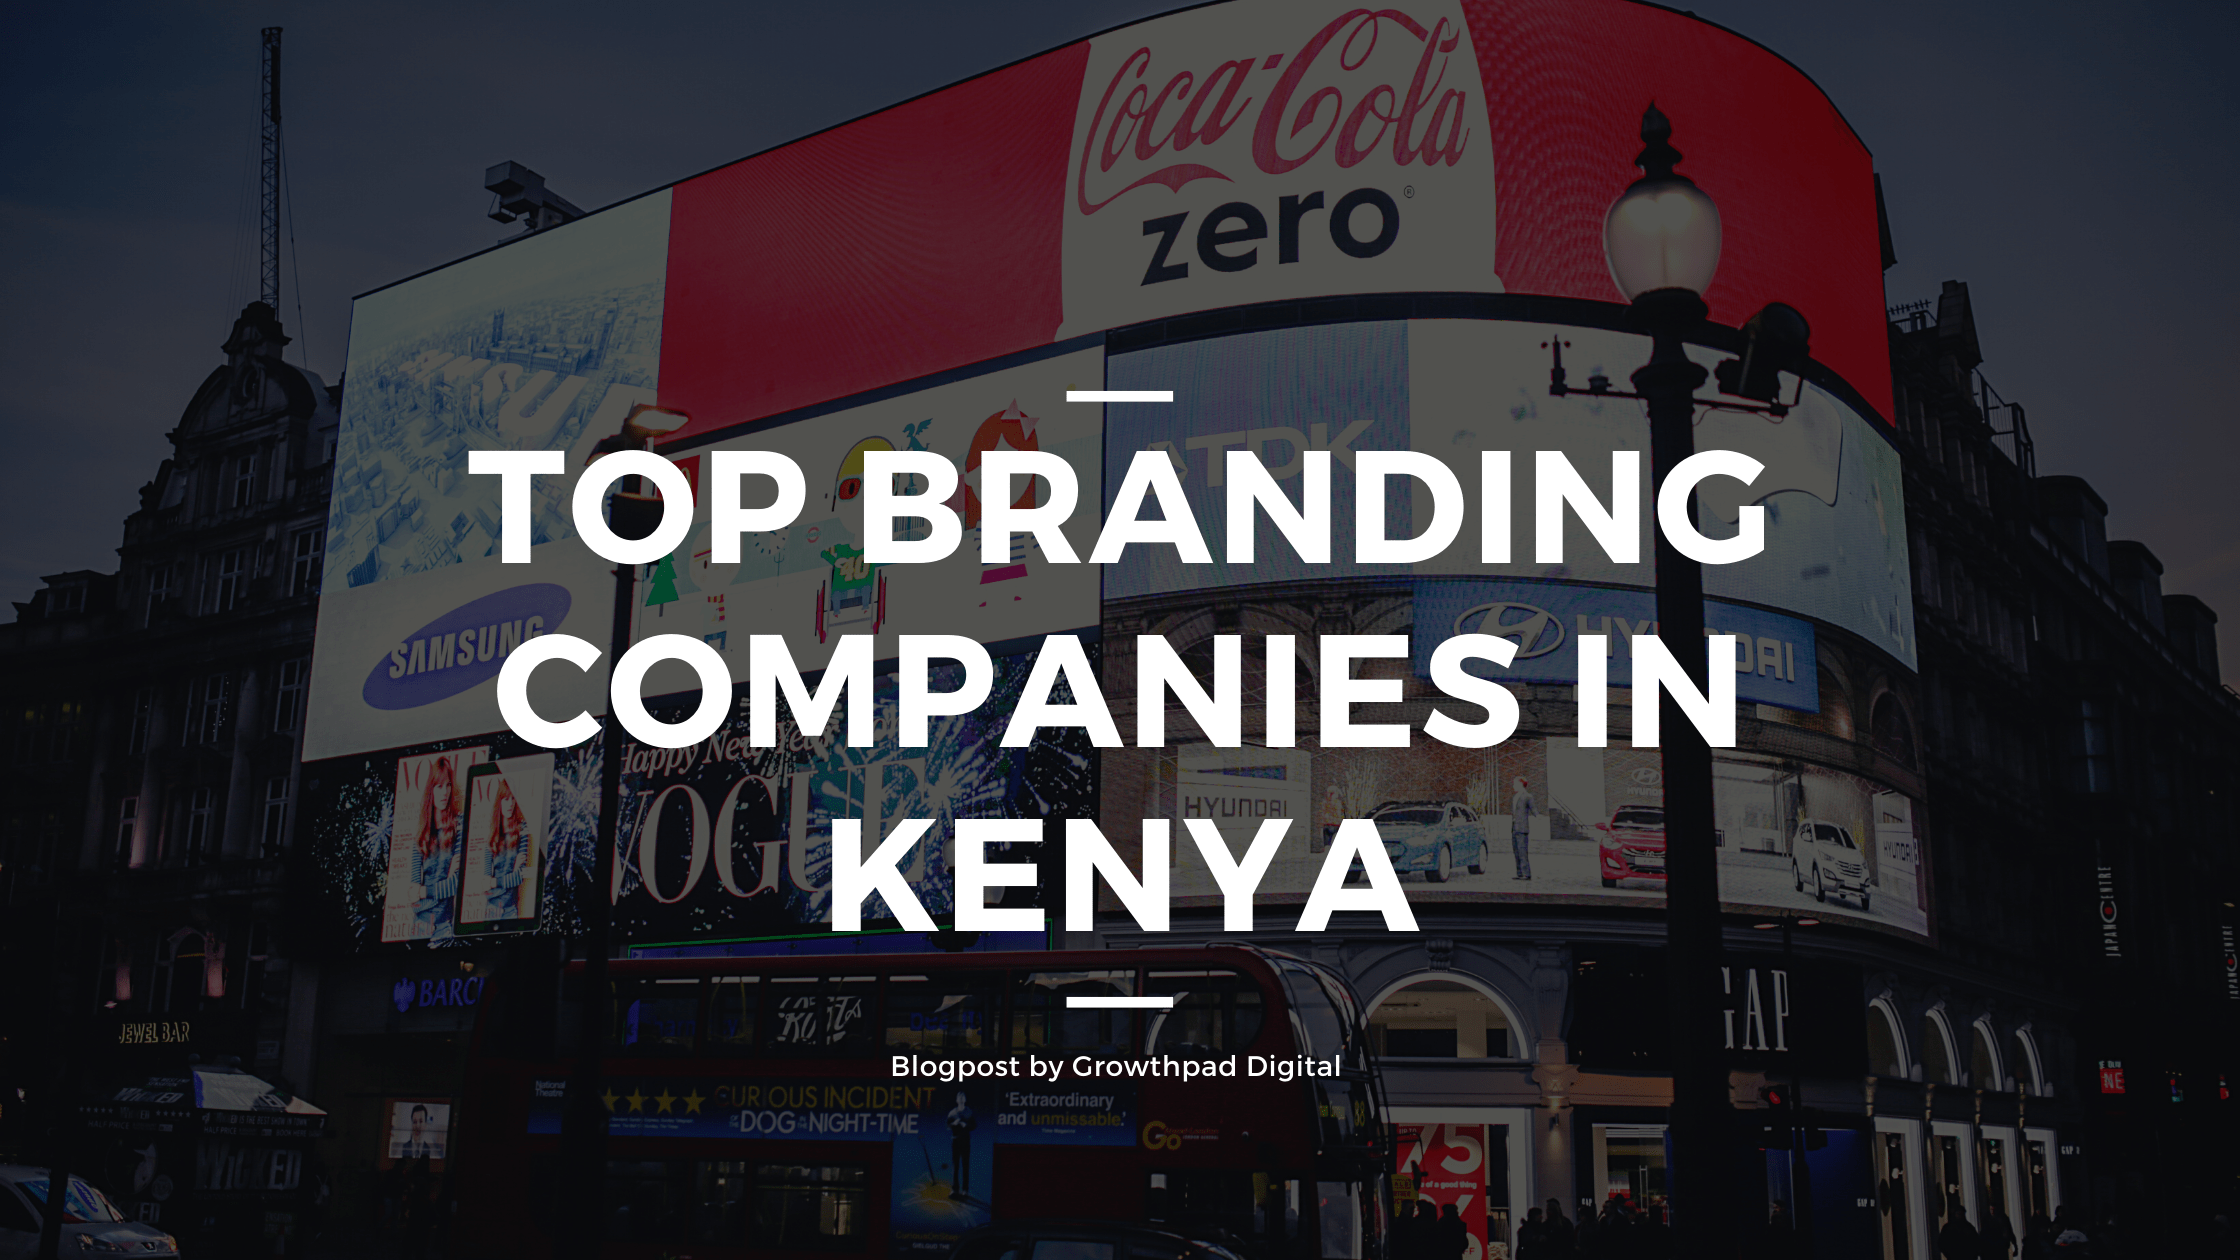 Top Branding Companies in Kenya